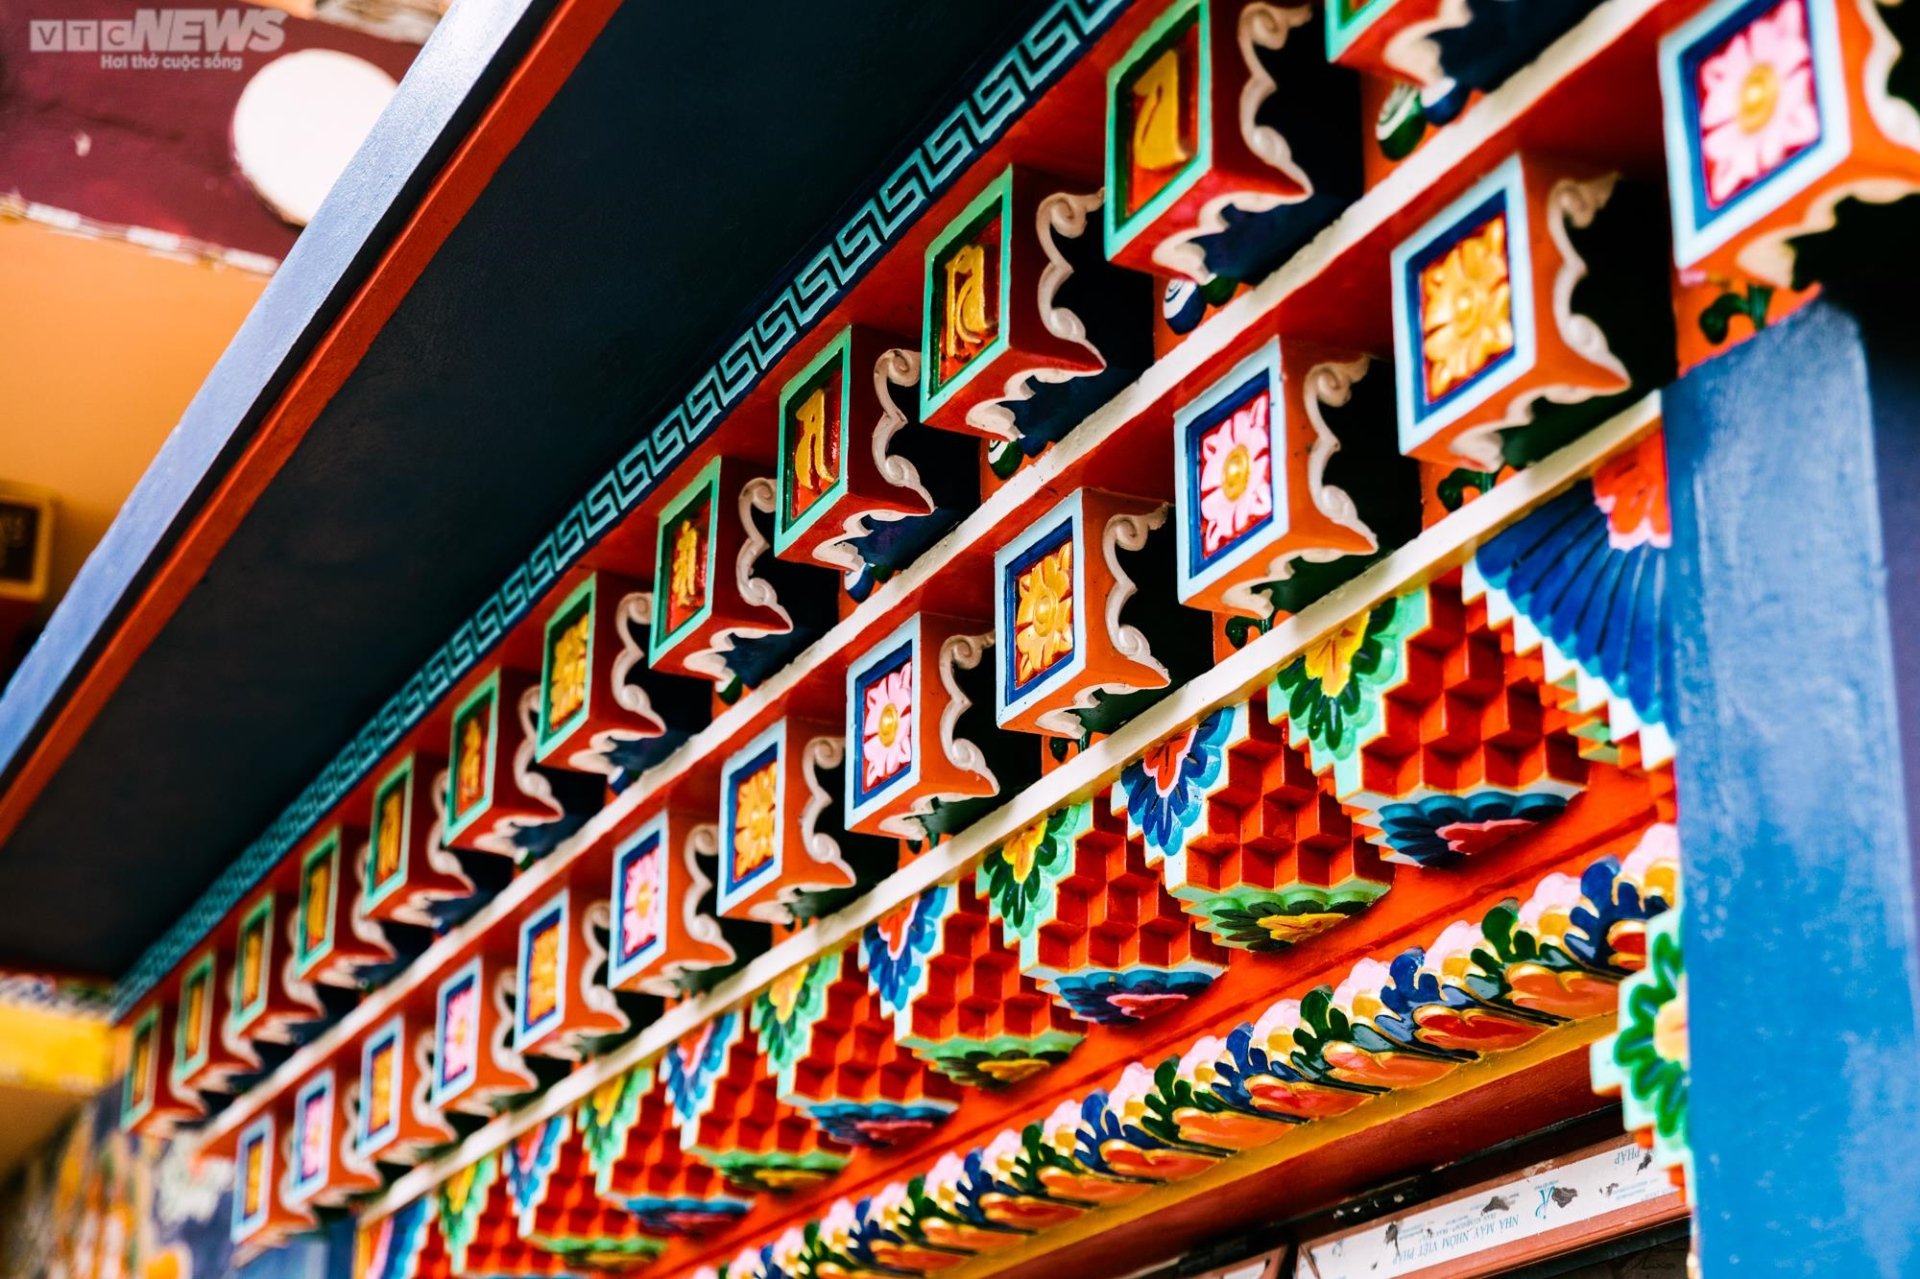 Chiêm ngưỡng ngôi chùa Tây Tạng 600 năm tuổi độc nhất tại Hà Nội - 9